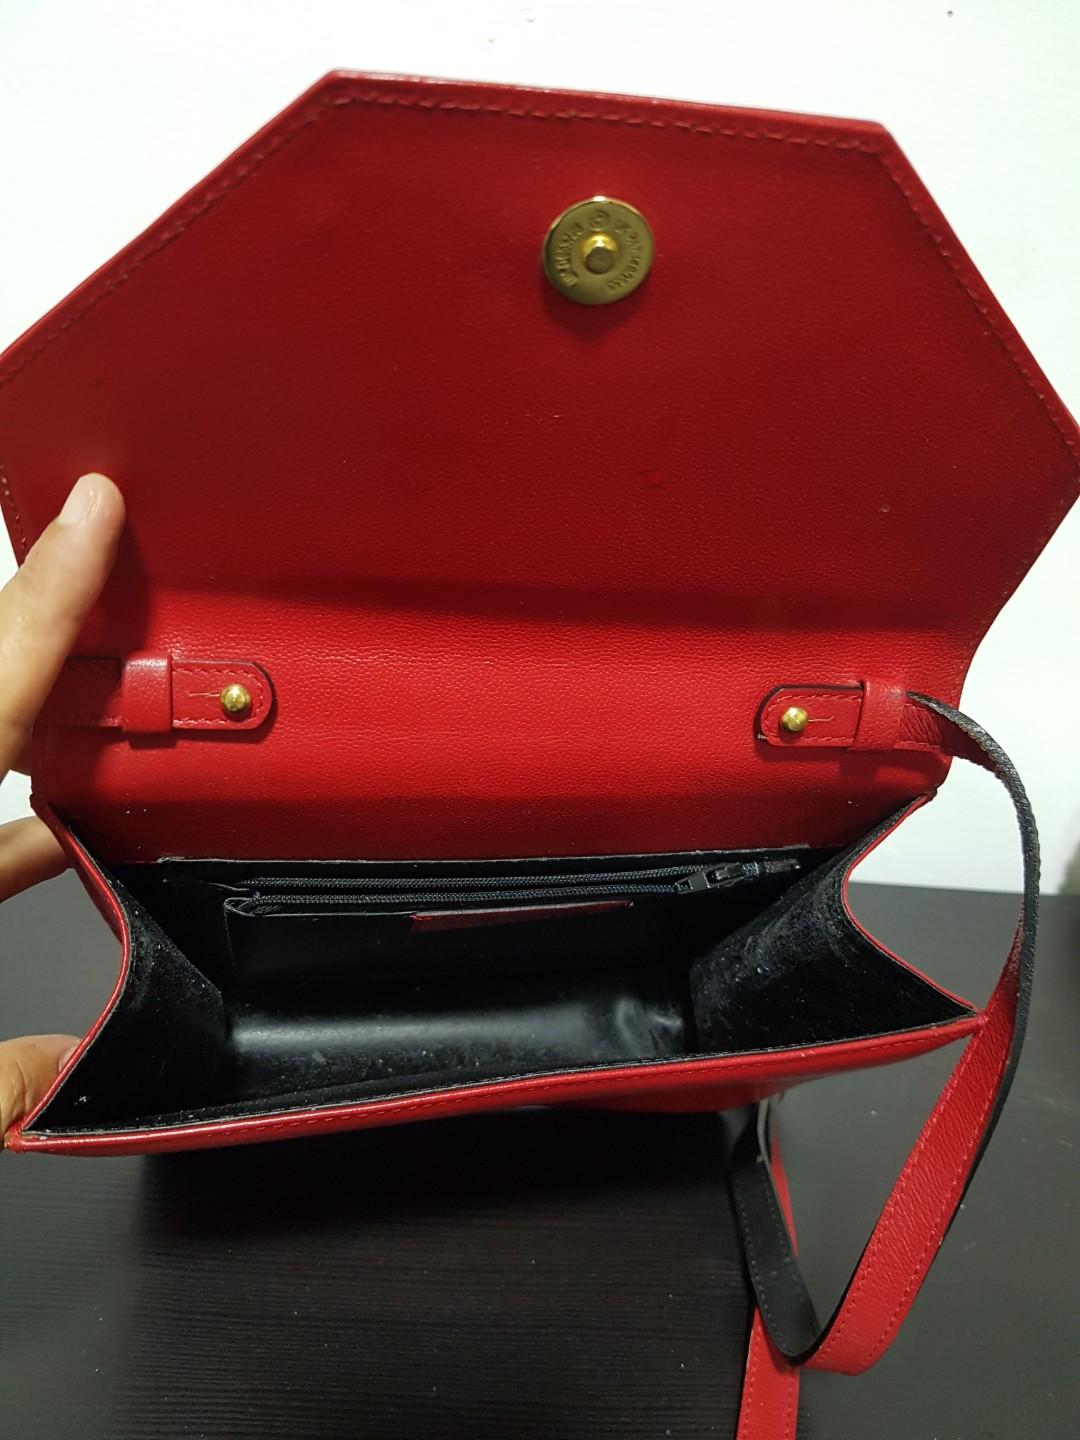 Louis Fontaine women handbag-riviara collection - XLFH6141: Buy